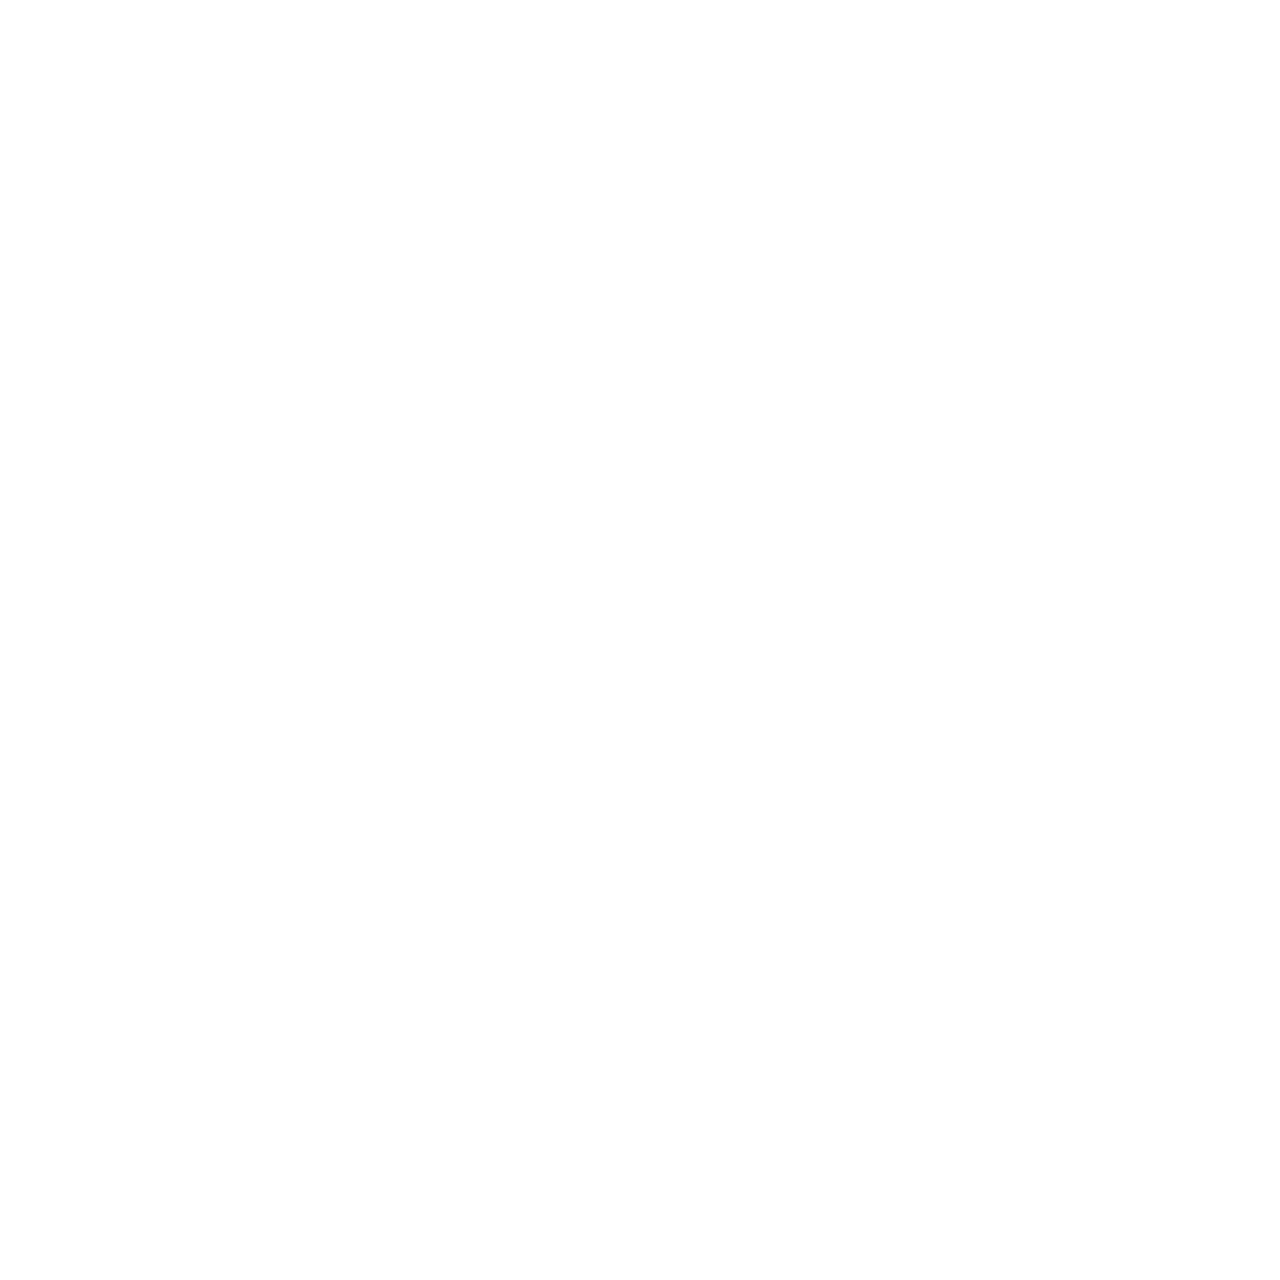 Smith & Wesson Brands Inc logo